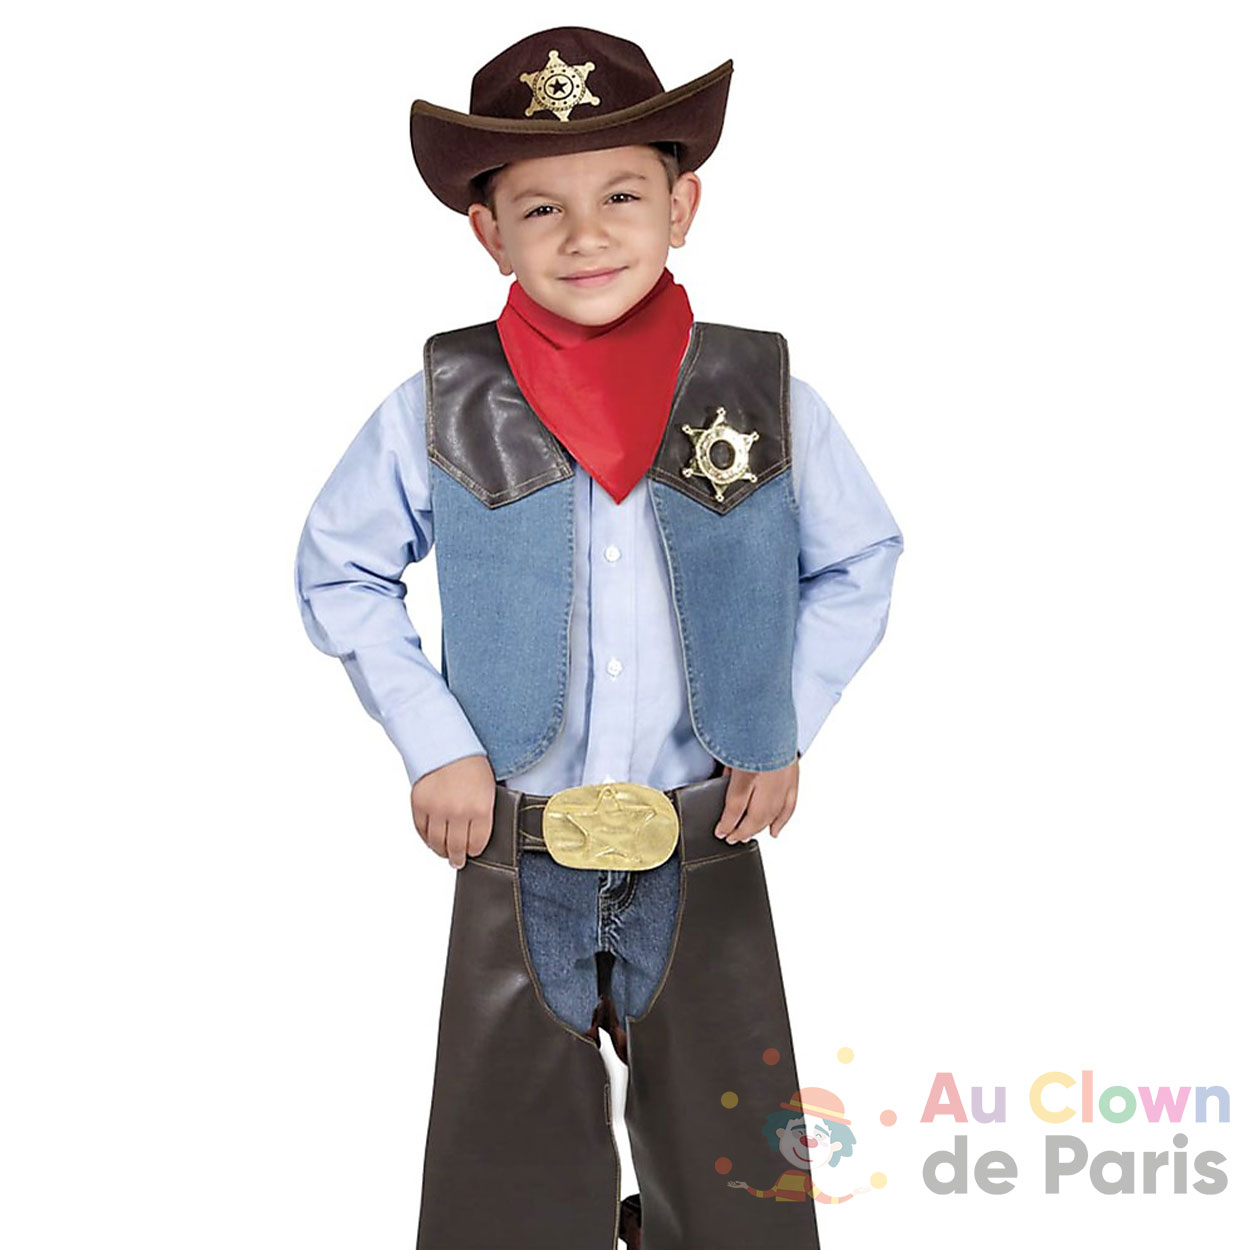 Costume Cowboy : Soyez prêt pour le carnaval!